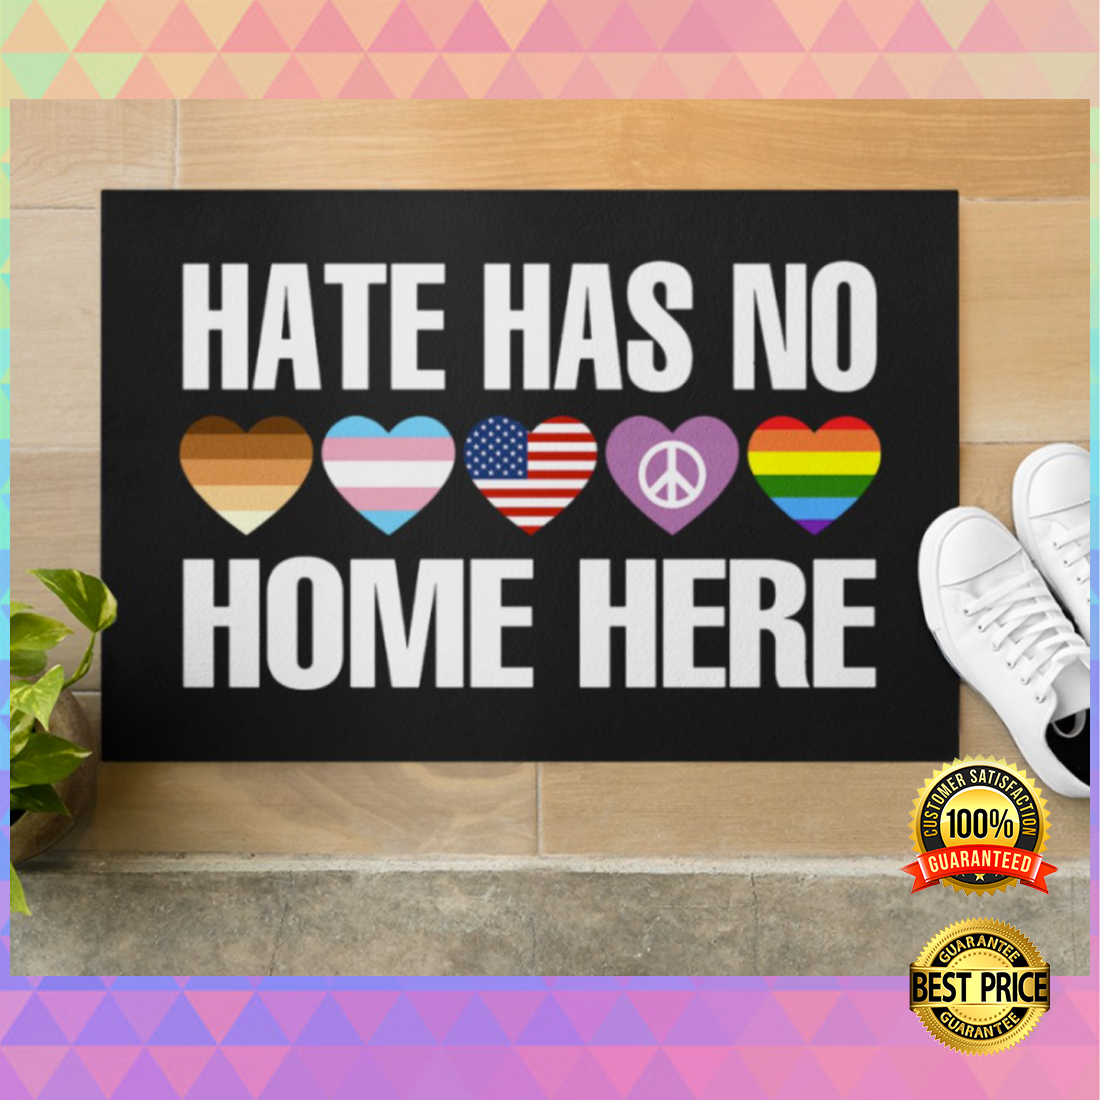 Hate has no home here doormat 5